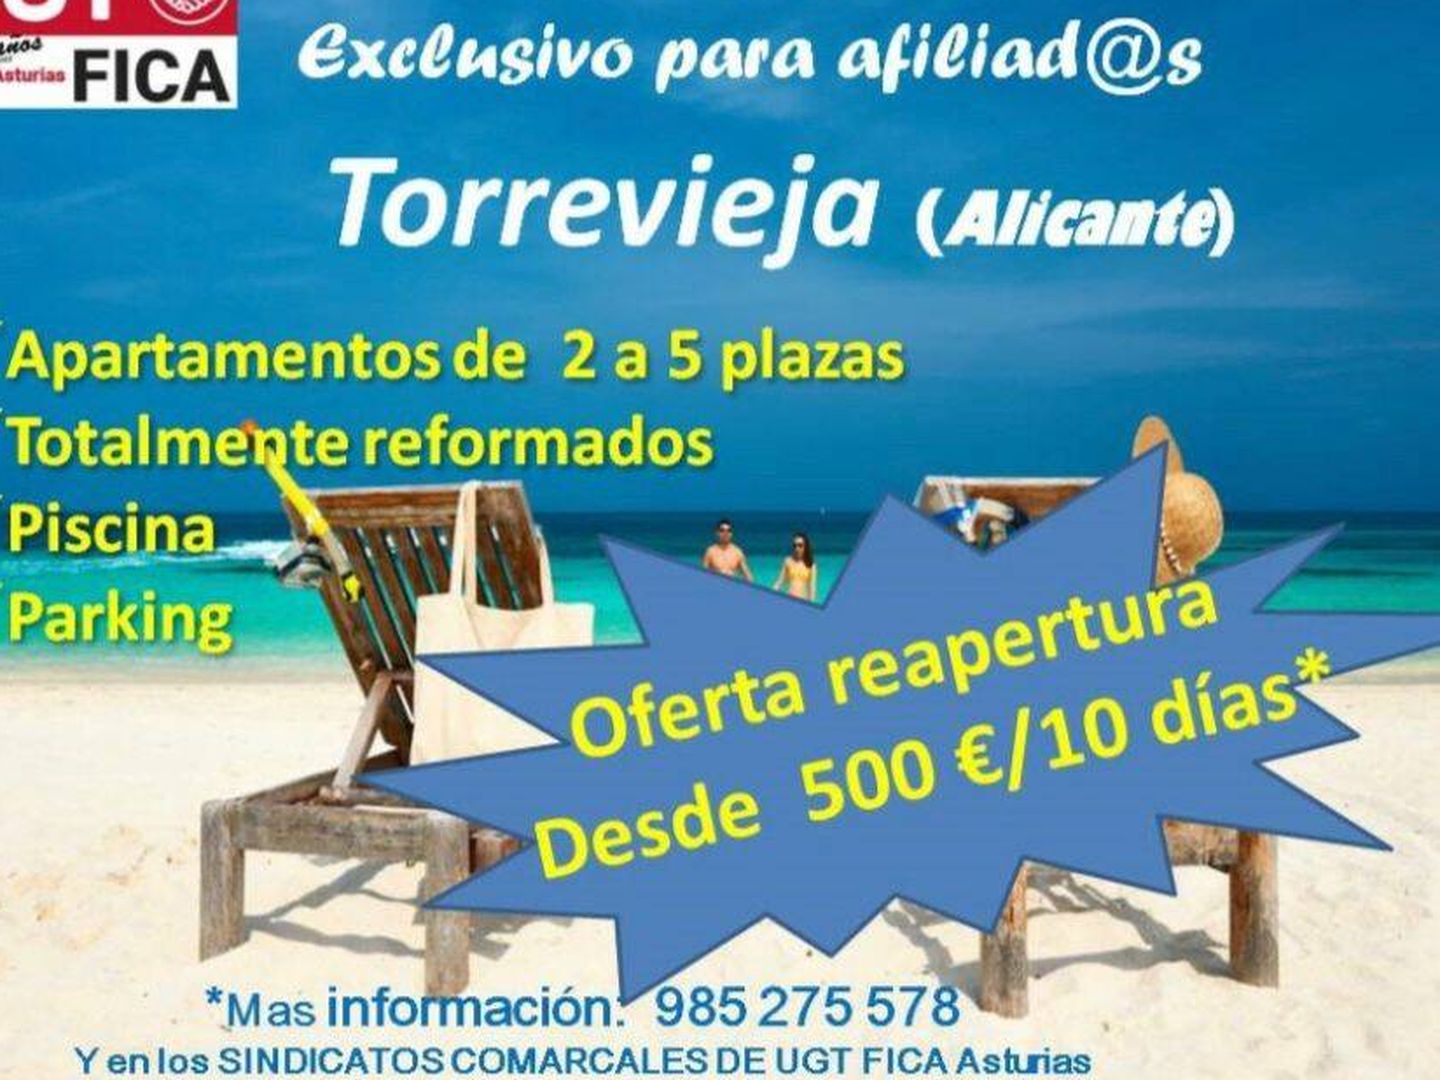 Oferta de verano de los apartamentos de Torrevieja para afiliados de UGT-FICA. (Cedida)